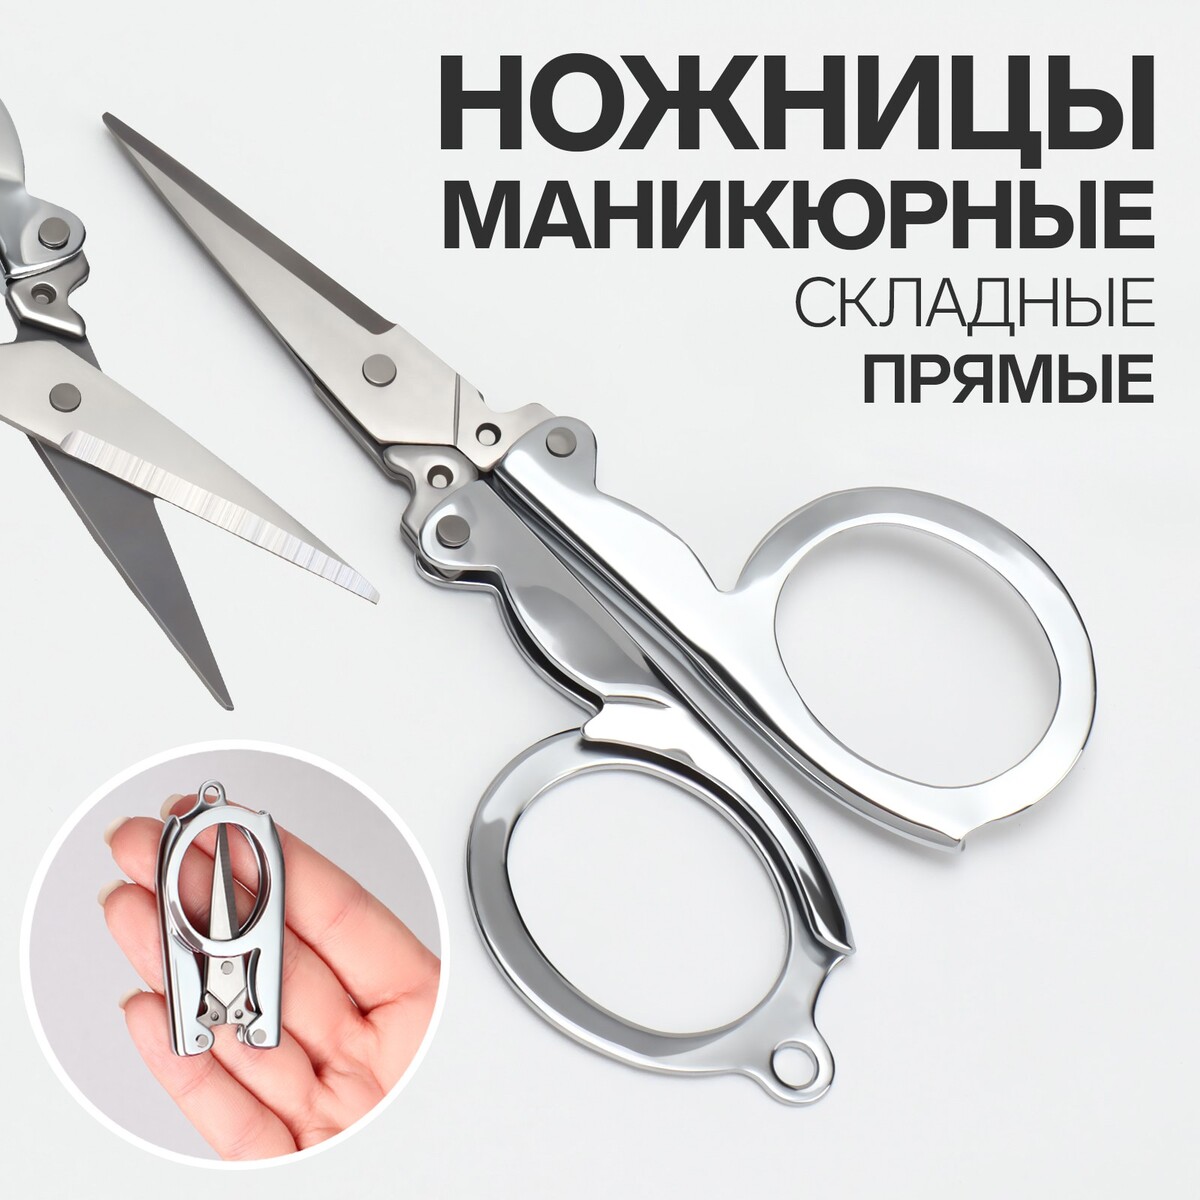 Ножницы маникюрные, складные, прямые, 10,5 см, цвет серебристый ножницы маникюрные прямые узкие 9 5 см серебристый